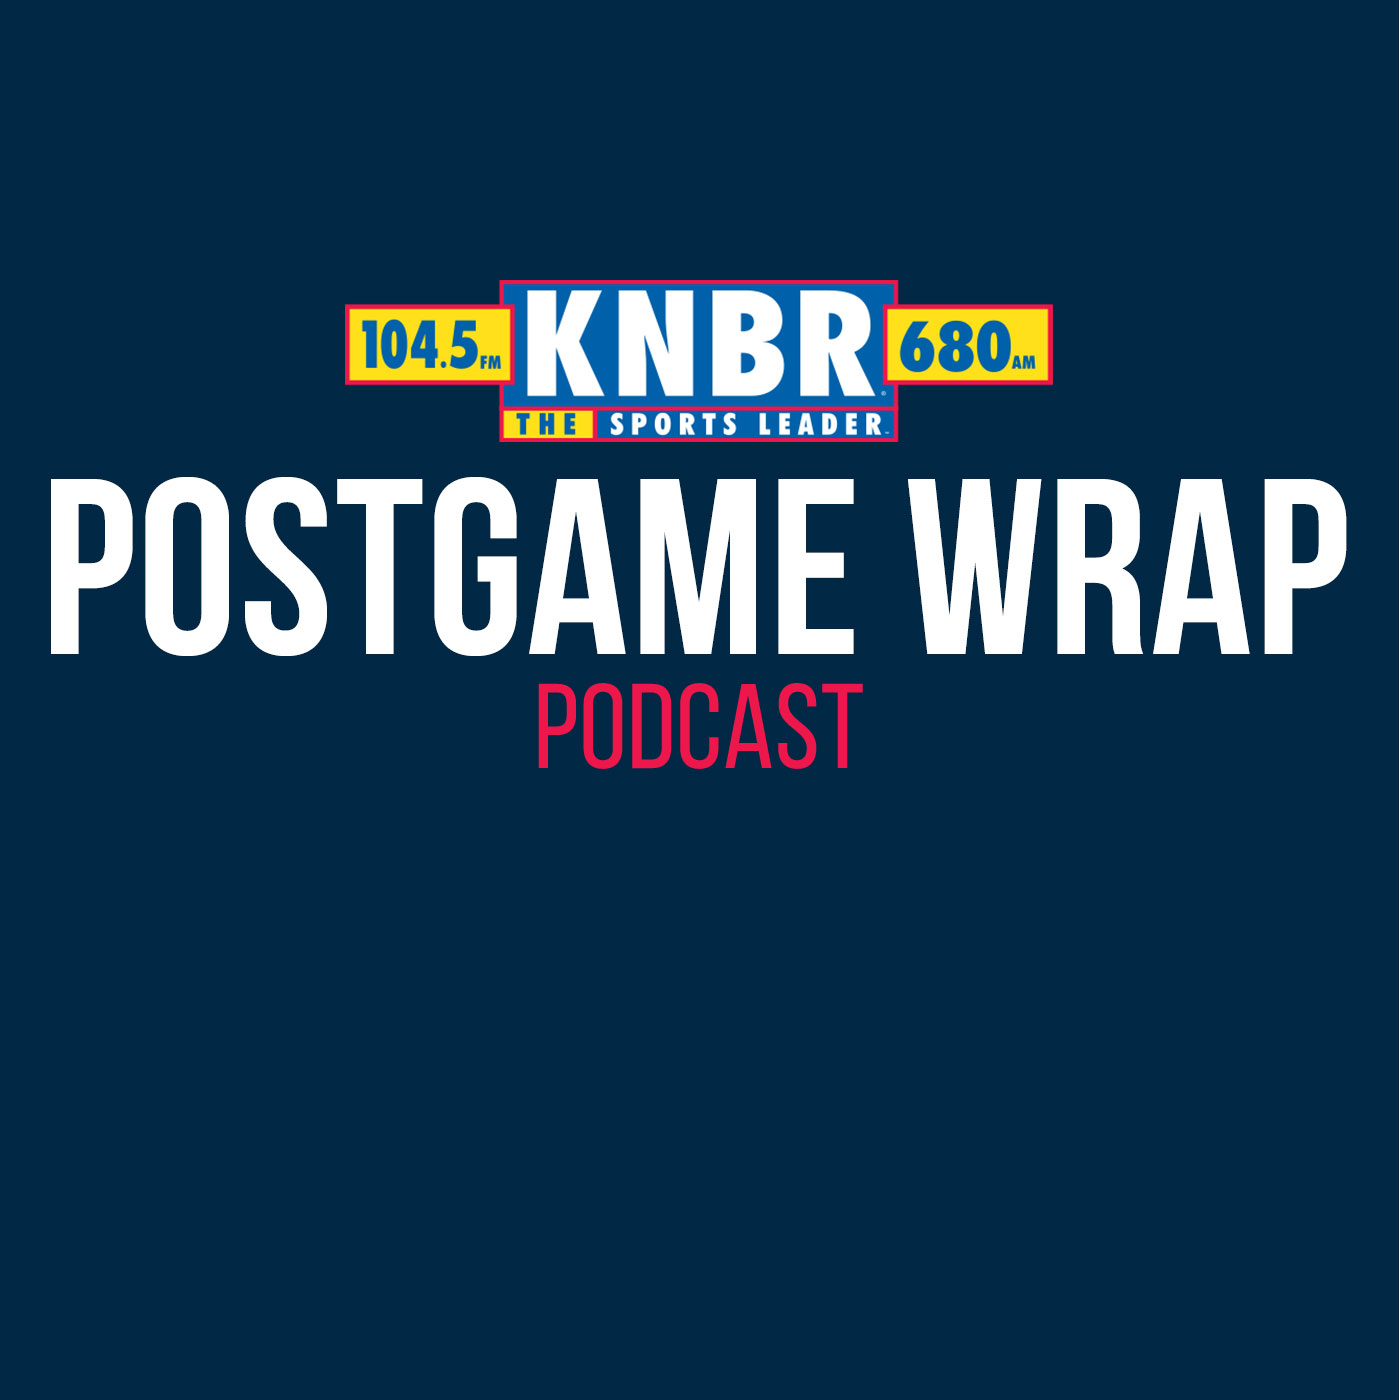 5-3 Postgame Wrap: Giants 4, Astros 2